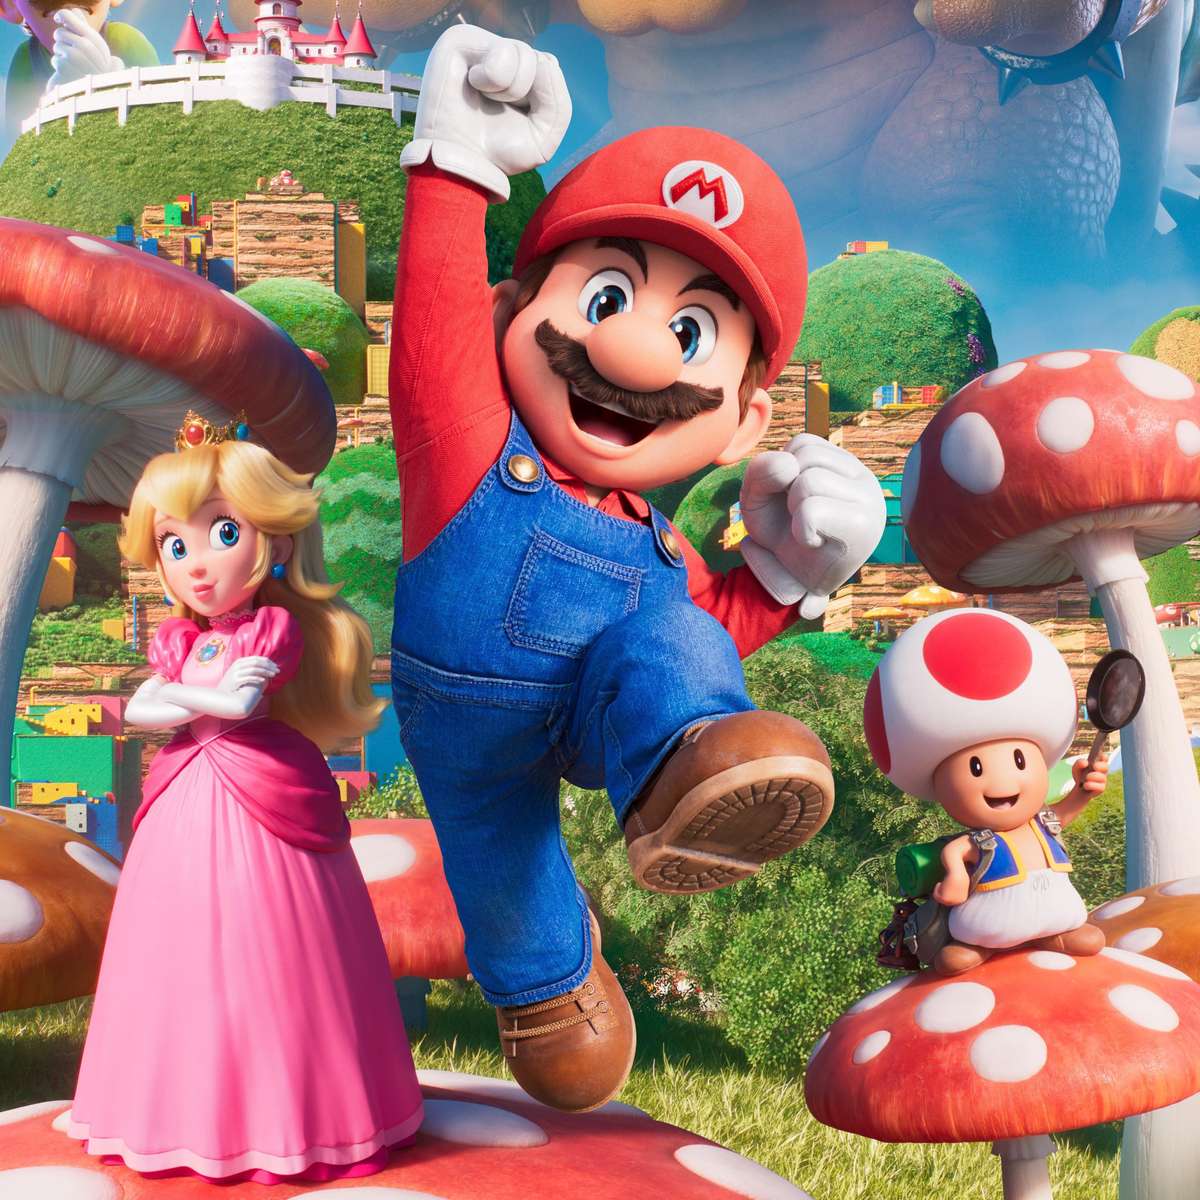 Super Mario Bros: quais jogos estão no filme? Veja as referências e easter  eggs - Olhar Digital